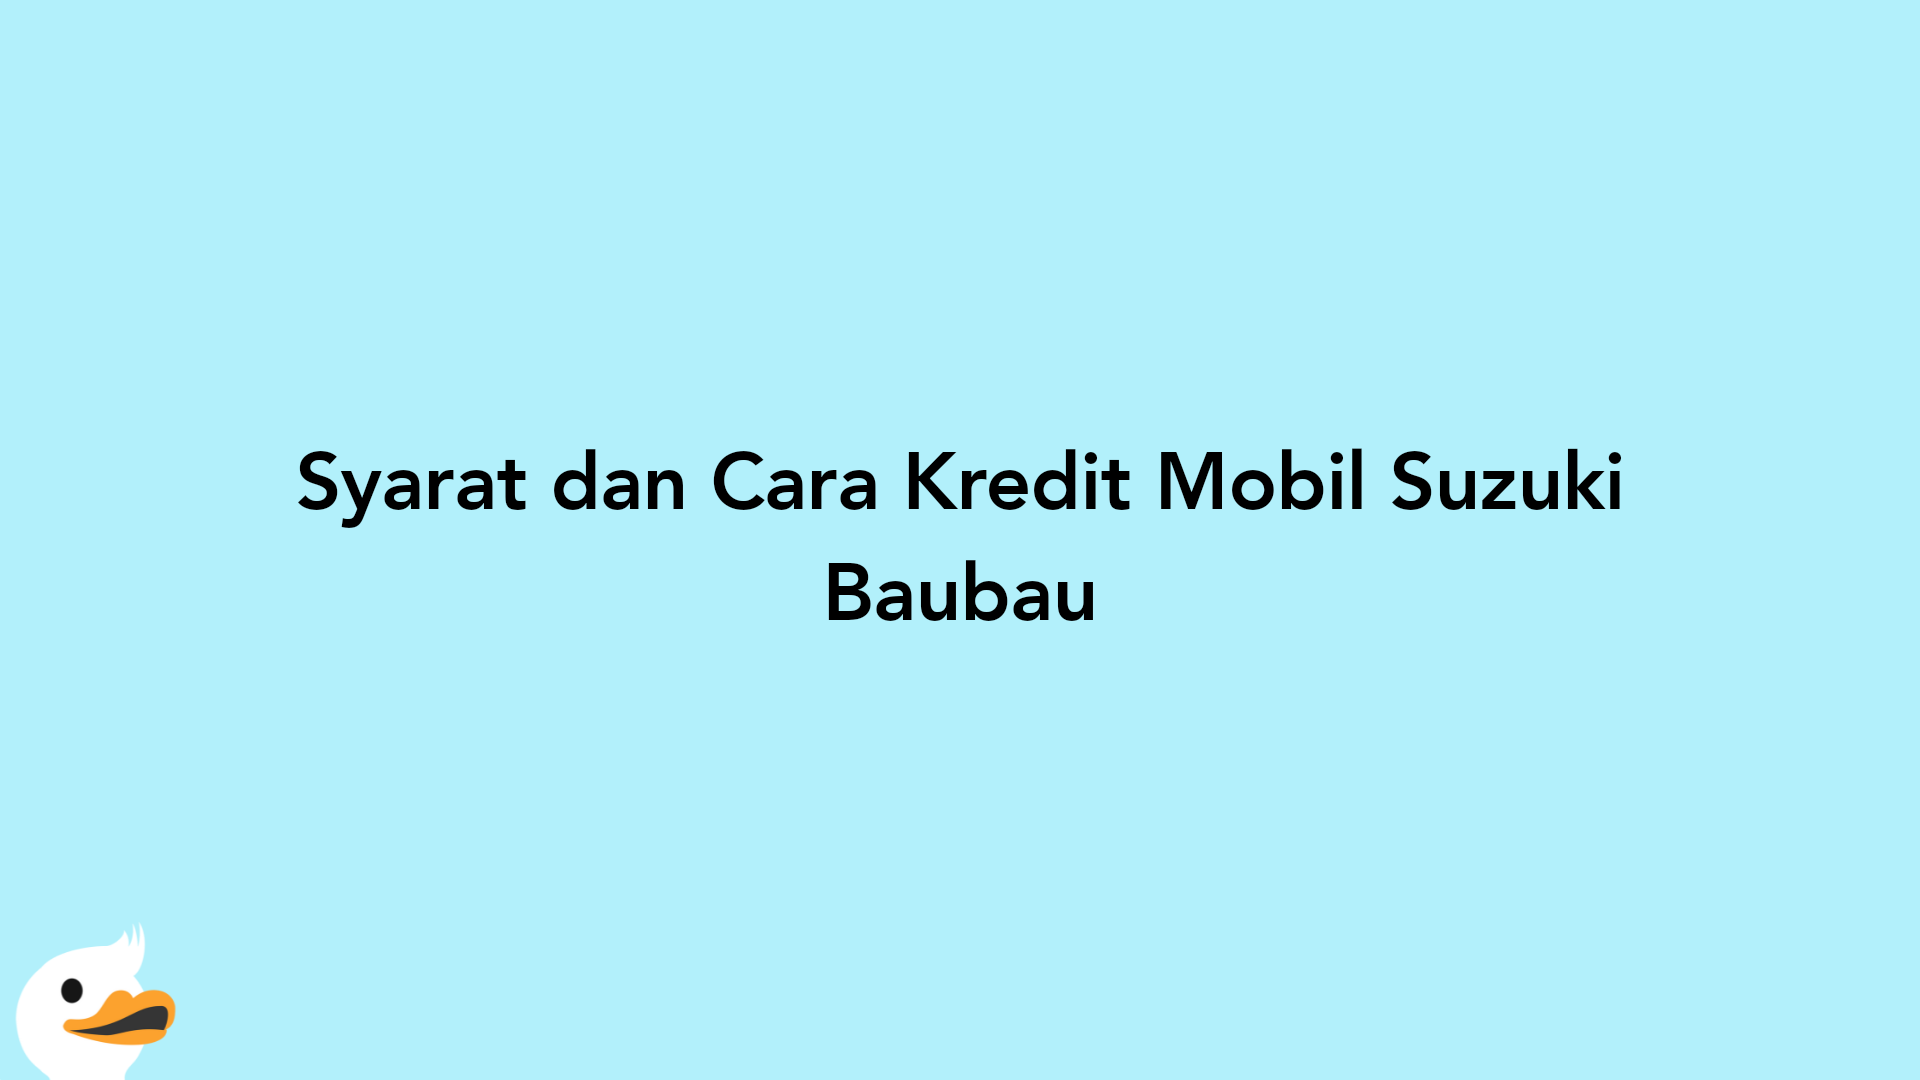 Syarat dan Cara Kredit Mobil Suzuki Baubau